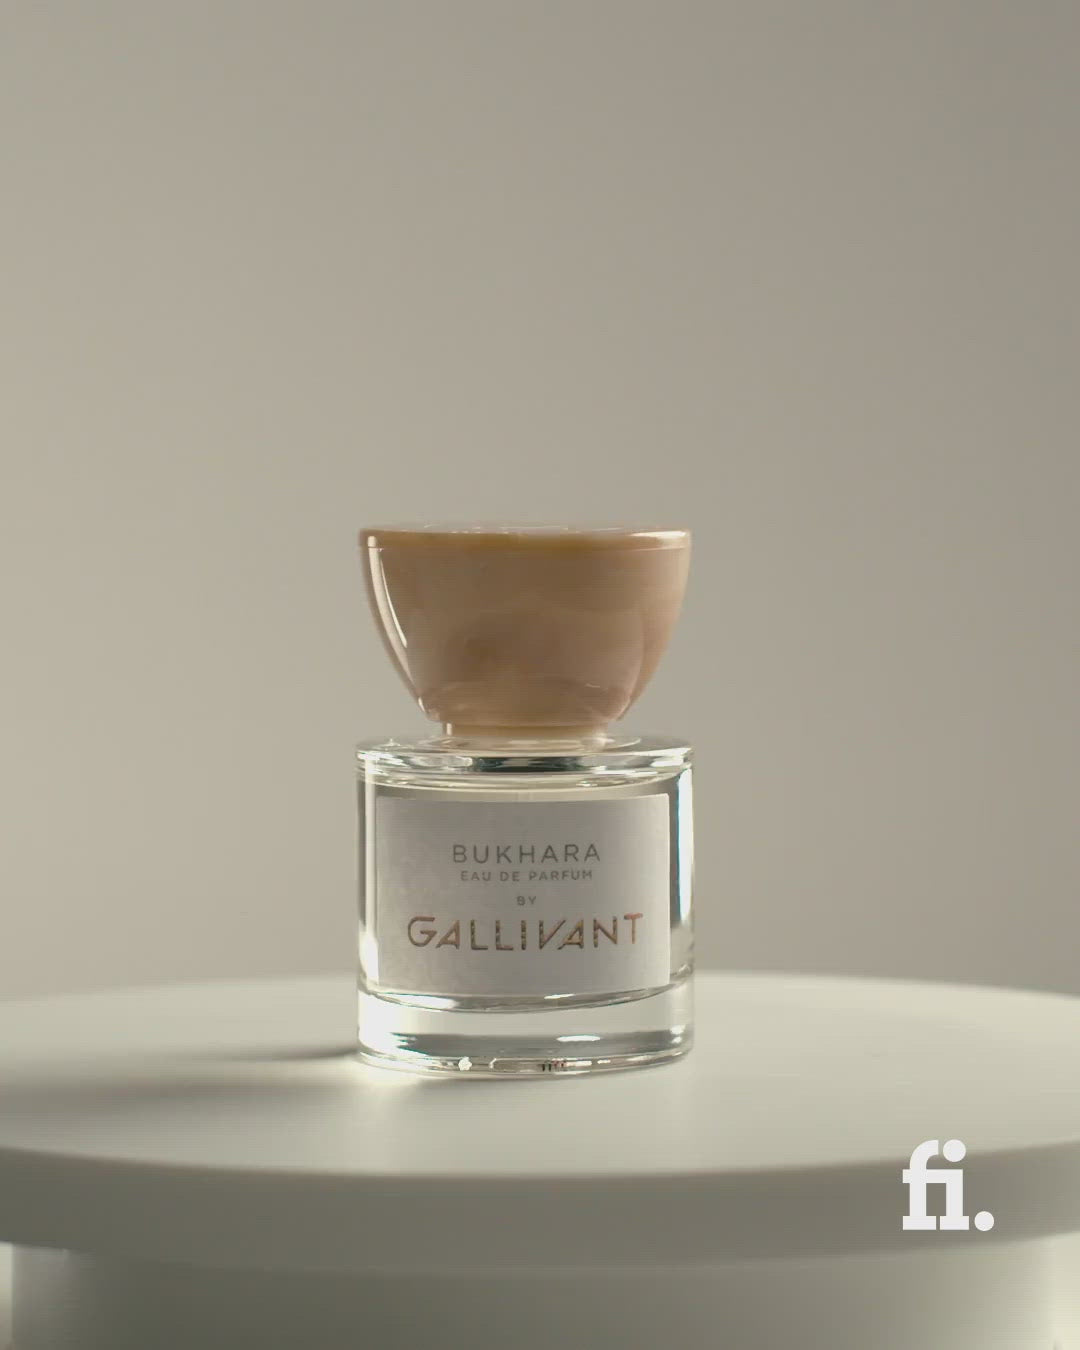 Video of Bukhara 30ml Eau de Parfum by Gallivant